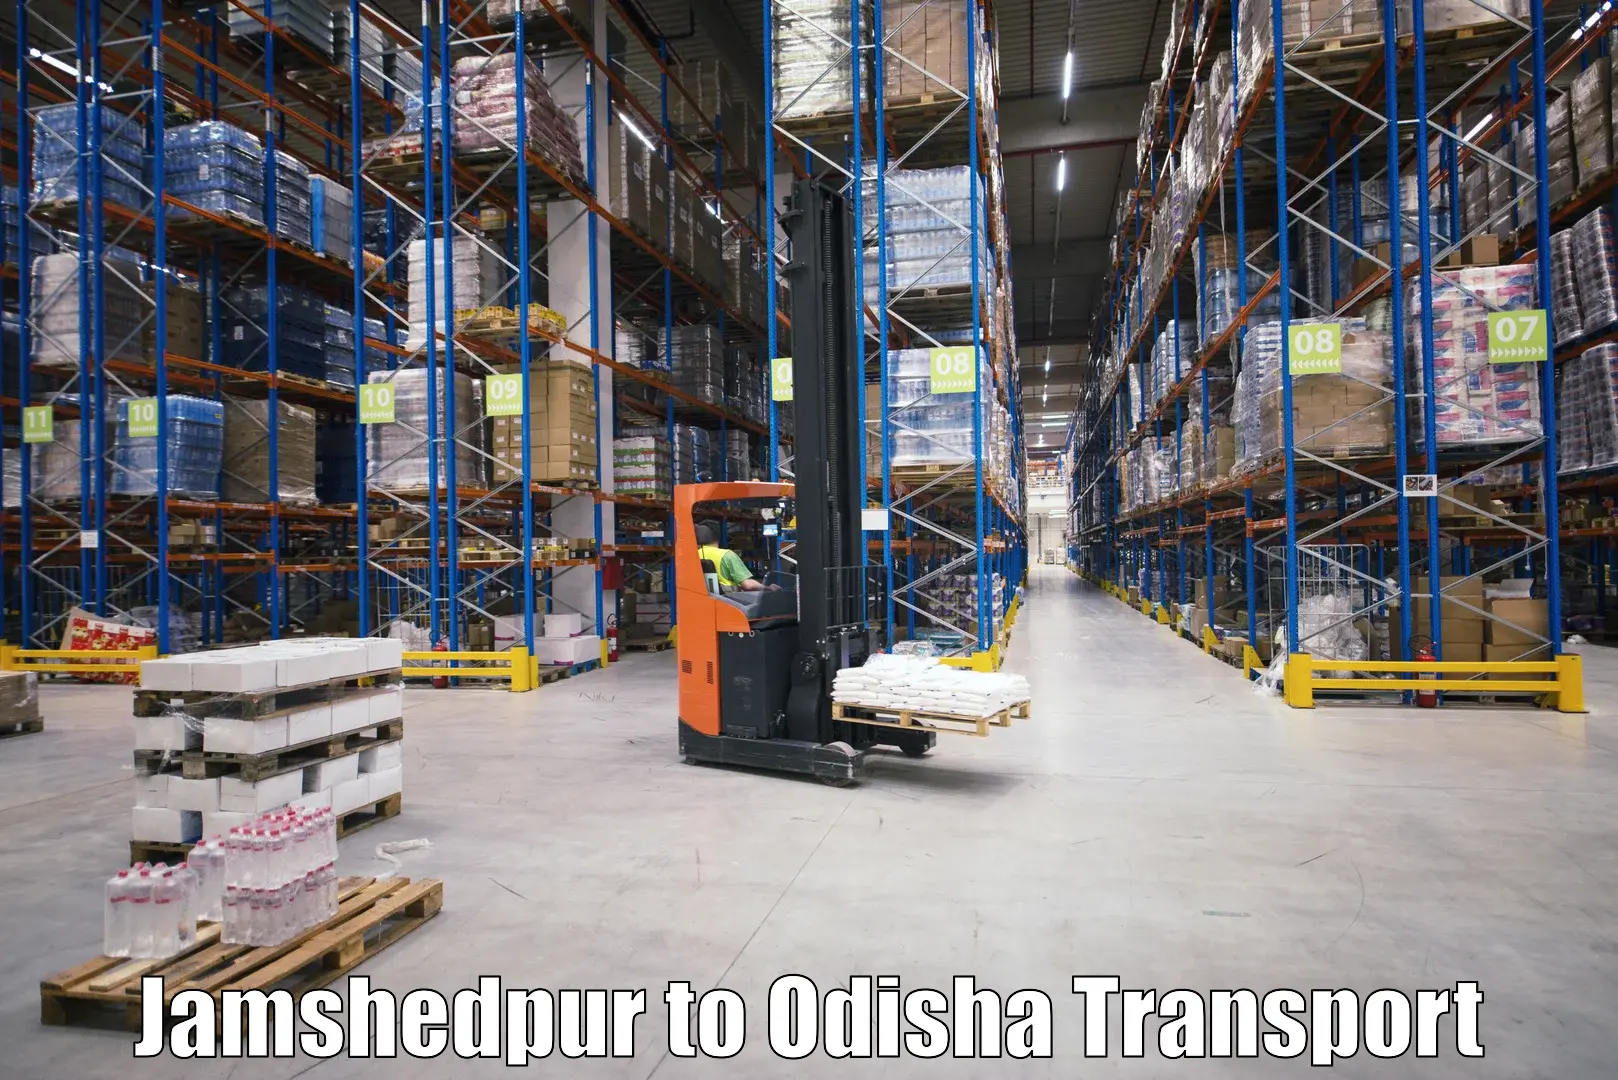 Pick up transport service Jamshedpur to Bonth